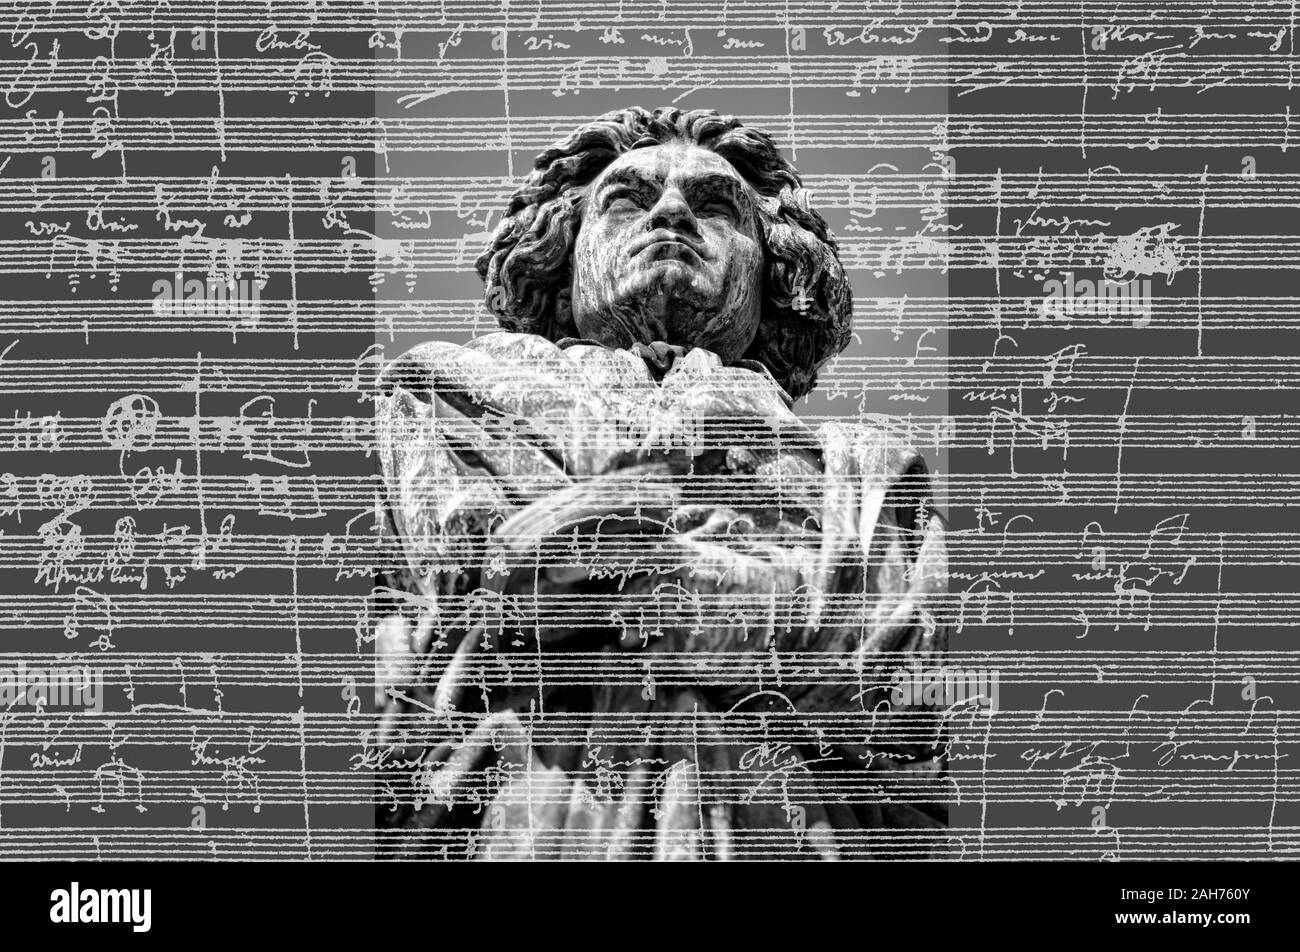 Scritto a mano la notazione musicale di Ludwig van Beethoven, love song, Zärtliche Liebe, 1795, monumento di Beethoven, Bonn, Germania, Foto Stock